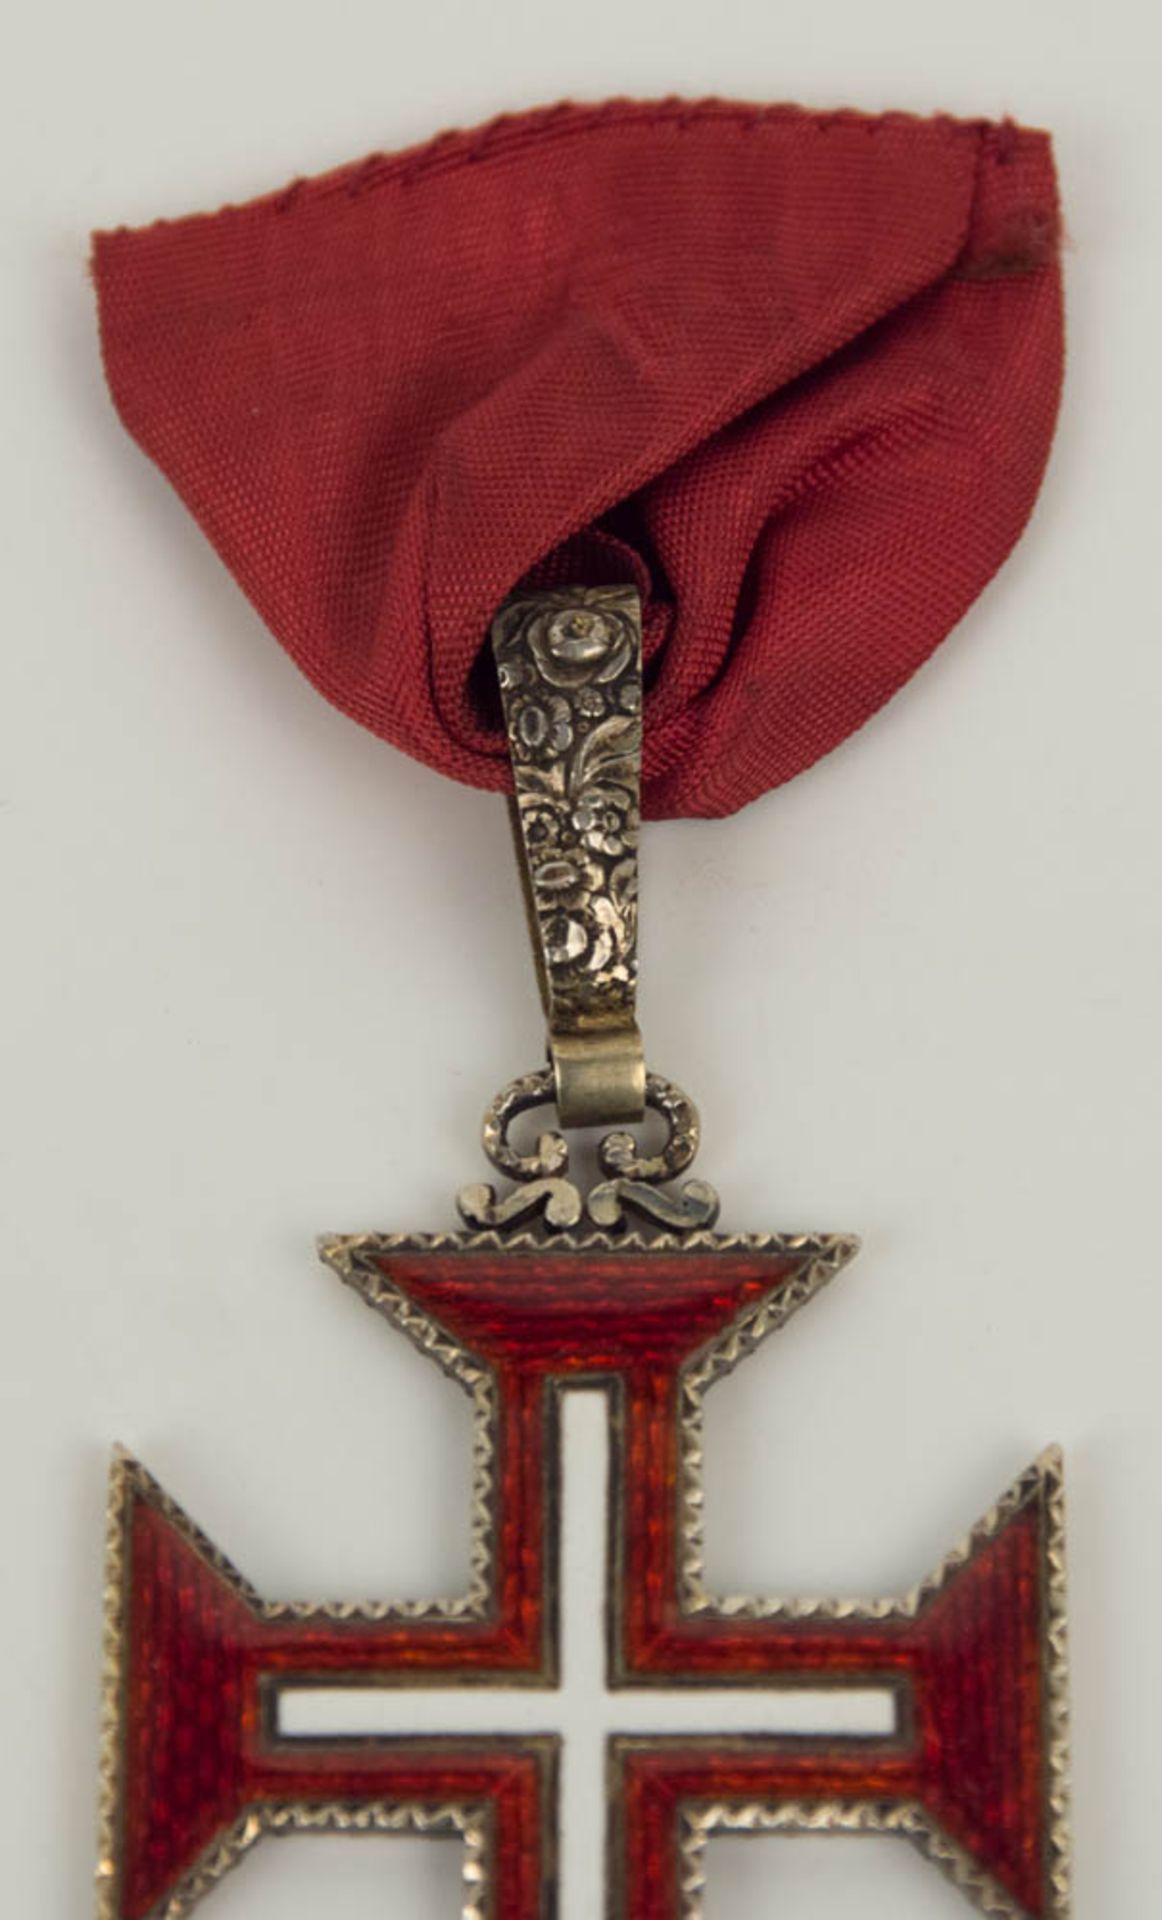 Portugal: Militärischer Christus-Orden, um 1900. - Bild 2 aus 5